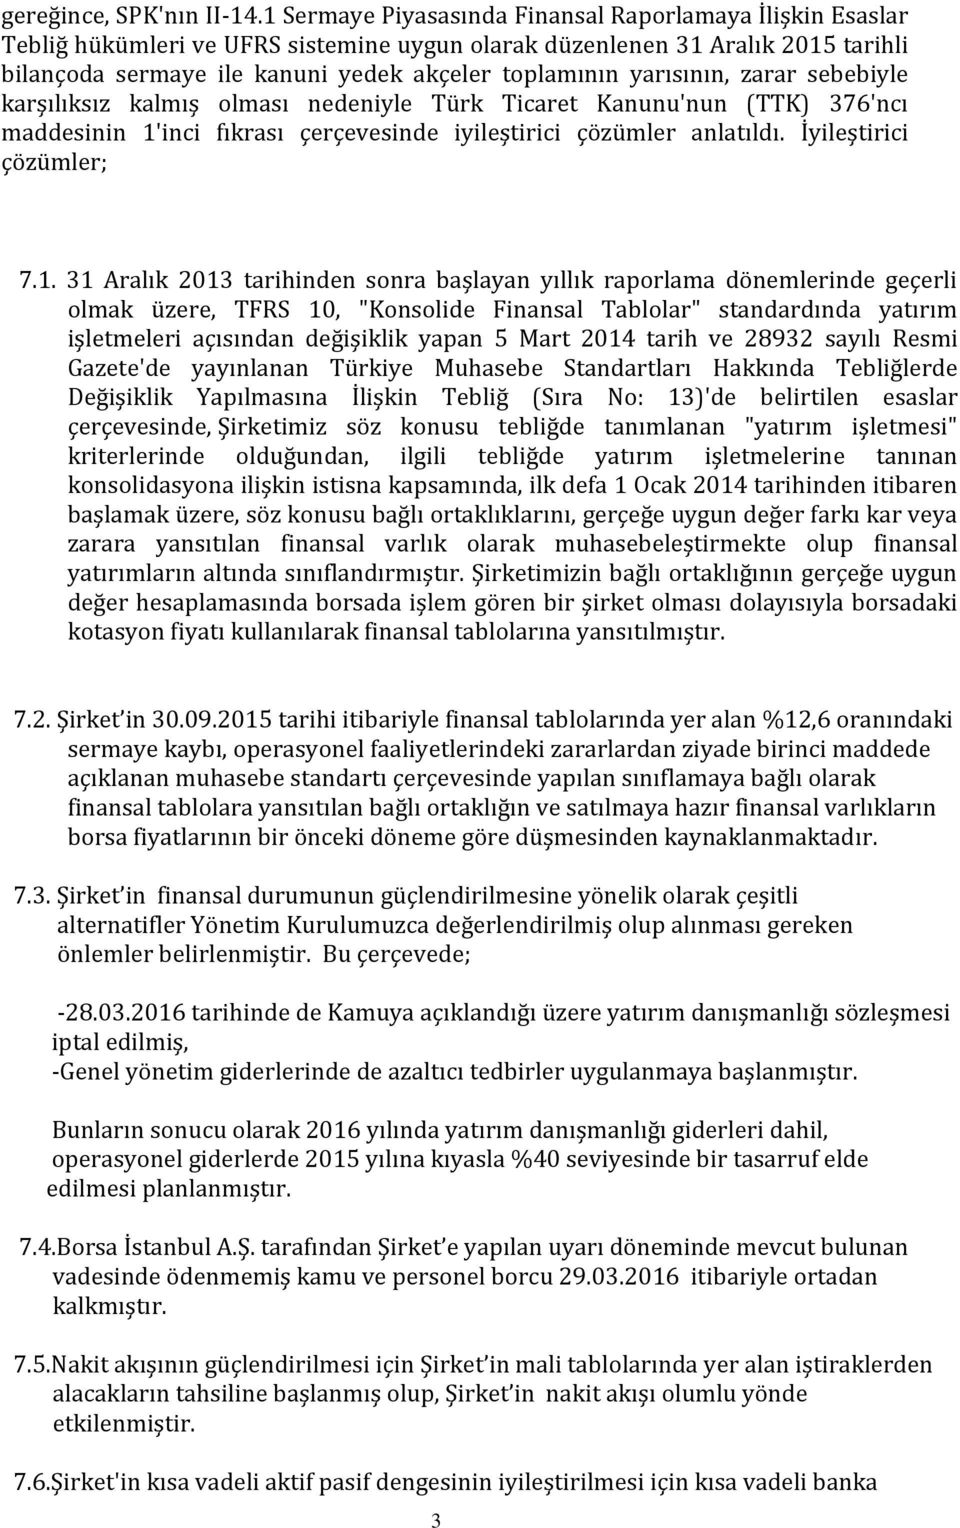 yarısının, zarar sebebiyle karşılıksız kalmış olması nedeniyle Türk Ticaret Kanunu'nun (TTK) 376'ncı maddesinin 1'